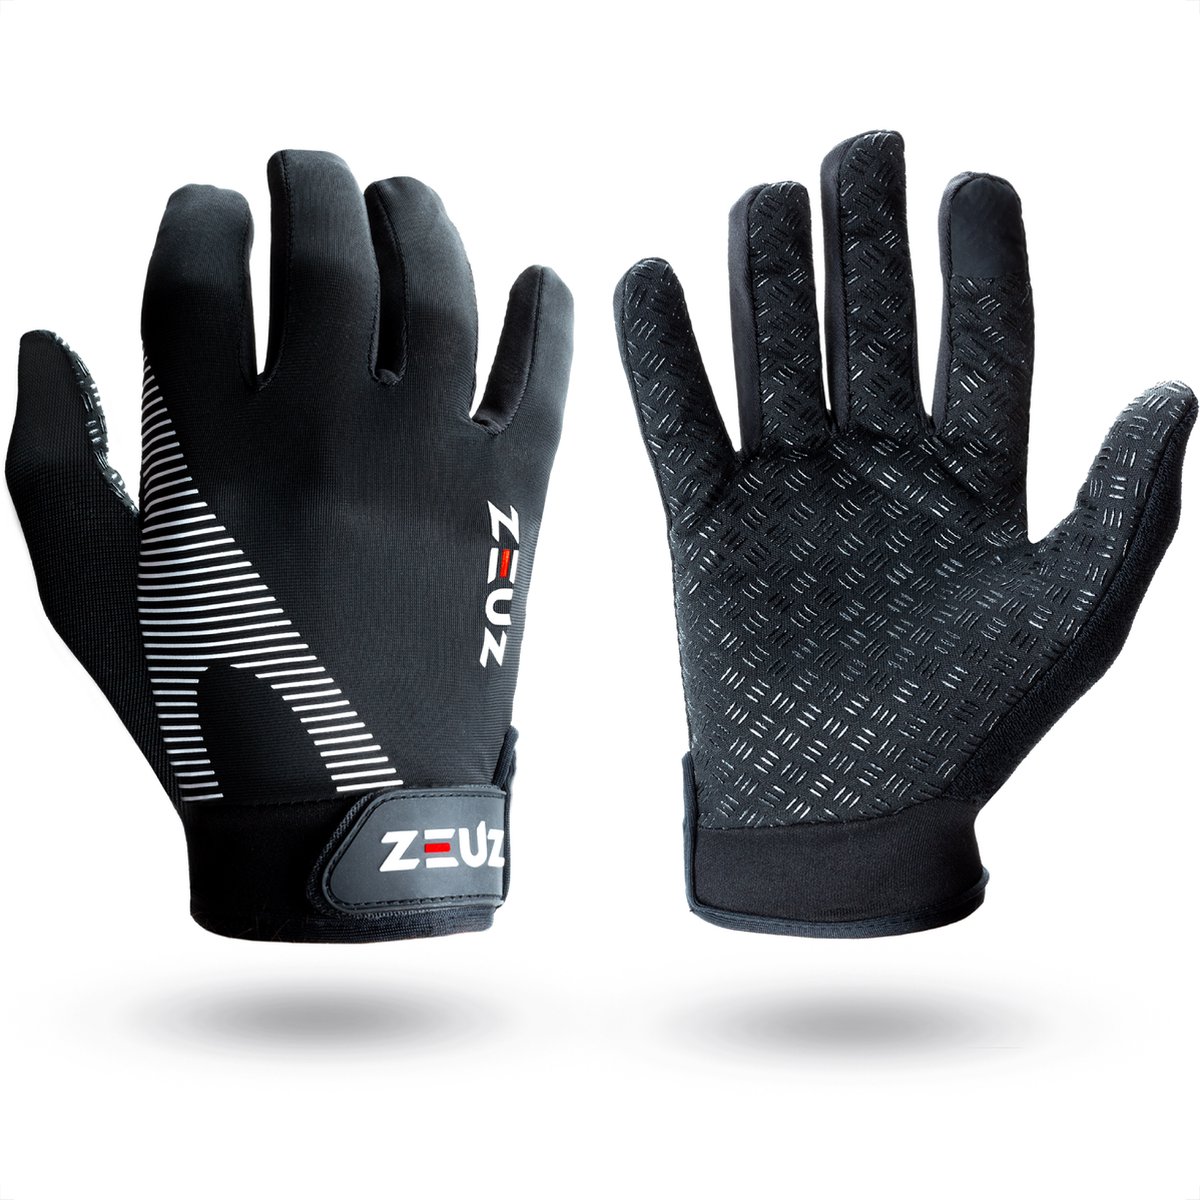 ZEUZ Fitness Handschoenen Heren & Dames – voor Sport, CrossFit & Krachttraining – Wit & Zwart – De perfecte gloves voor meer grip en bescherming tegen blaren & eelt - Maat XL - ZEUZ